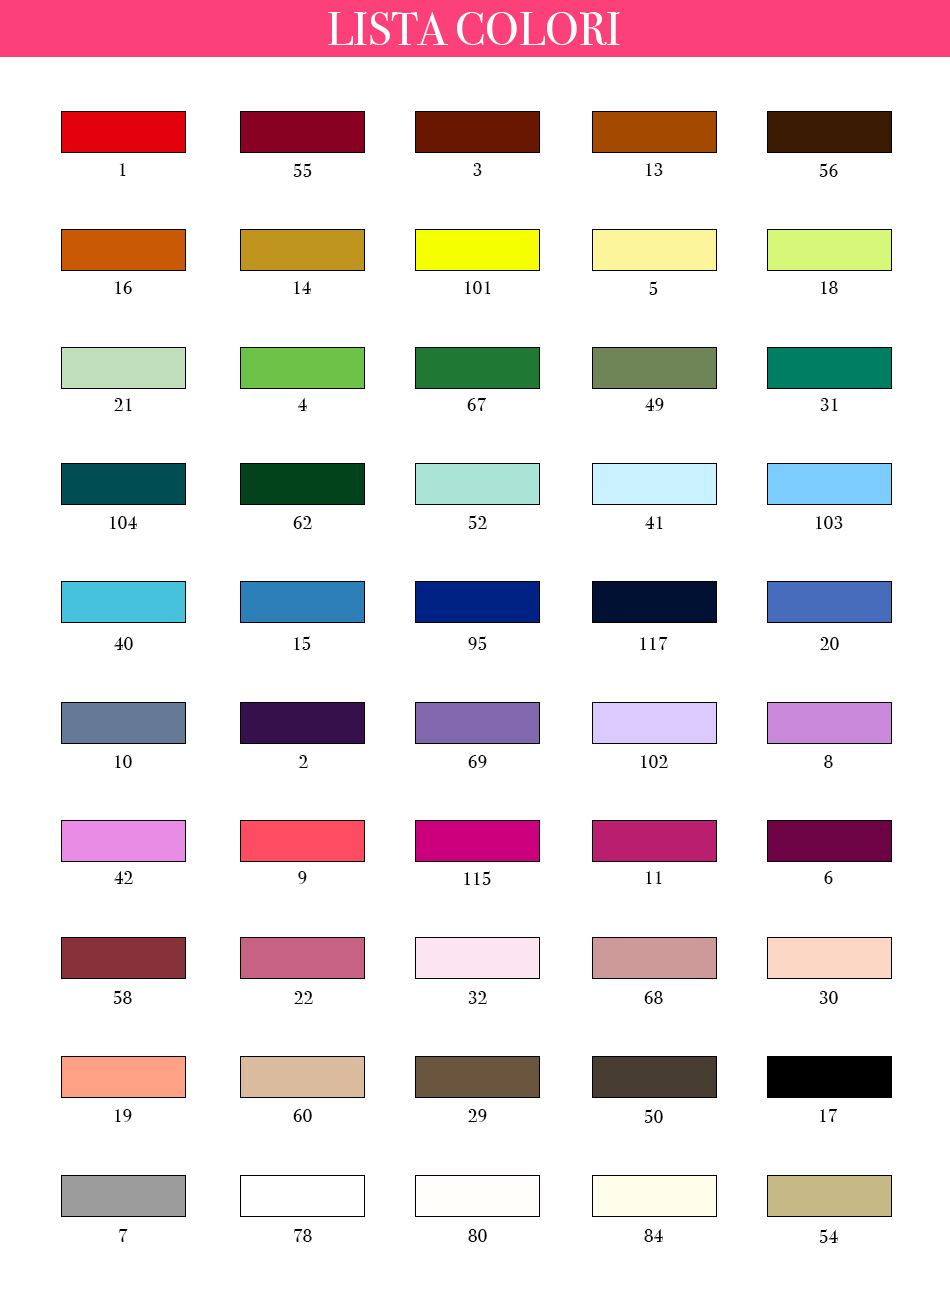 lista colori